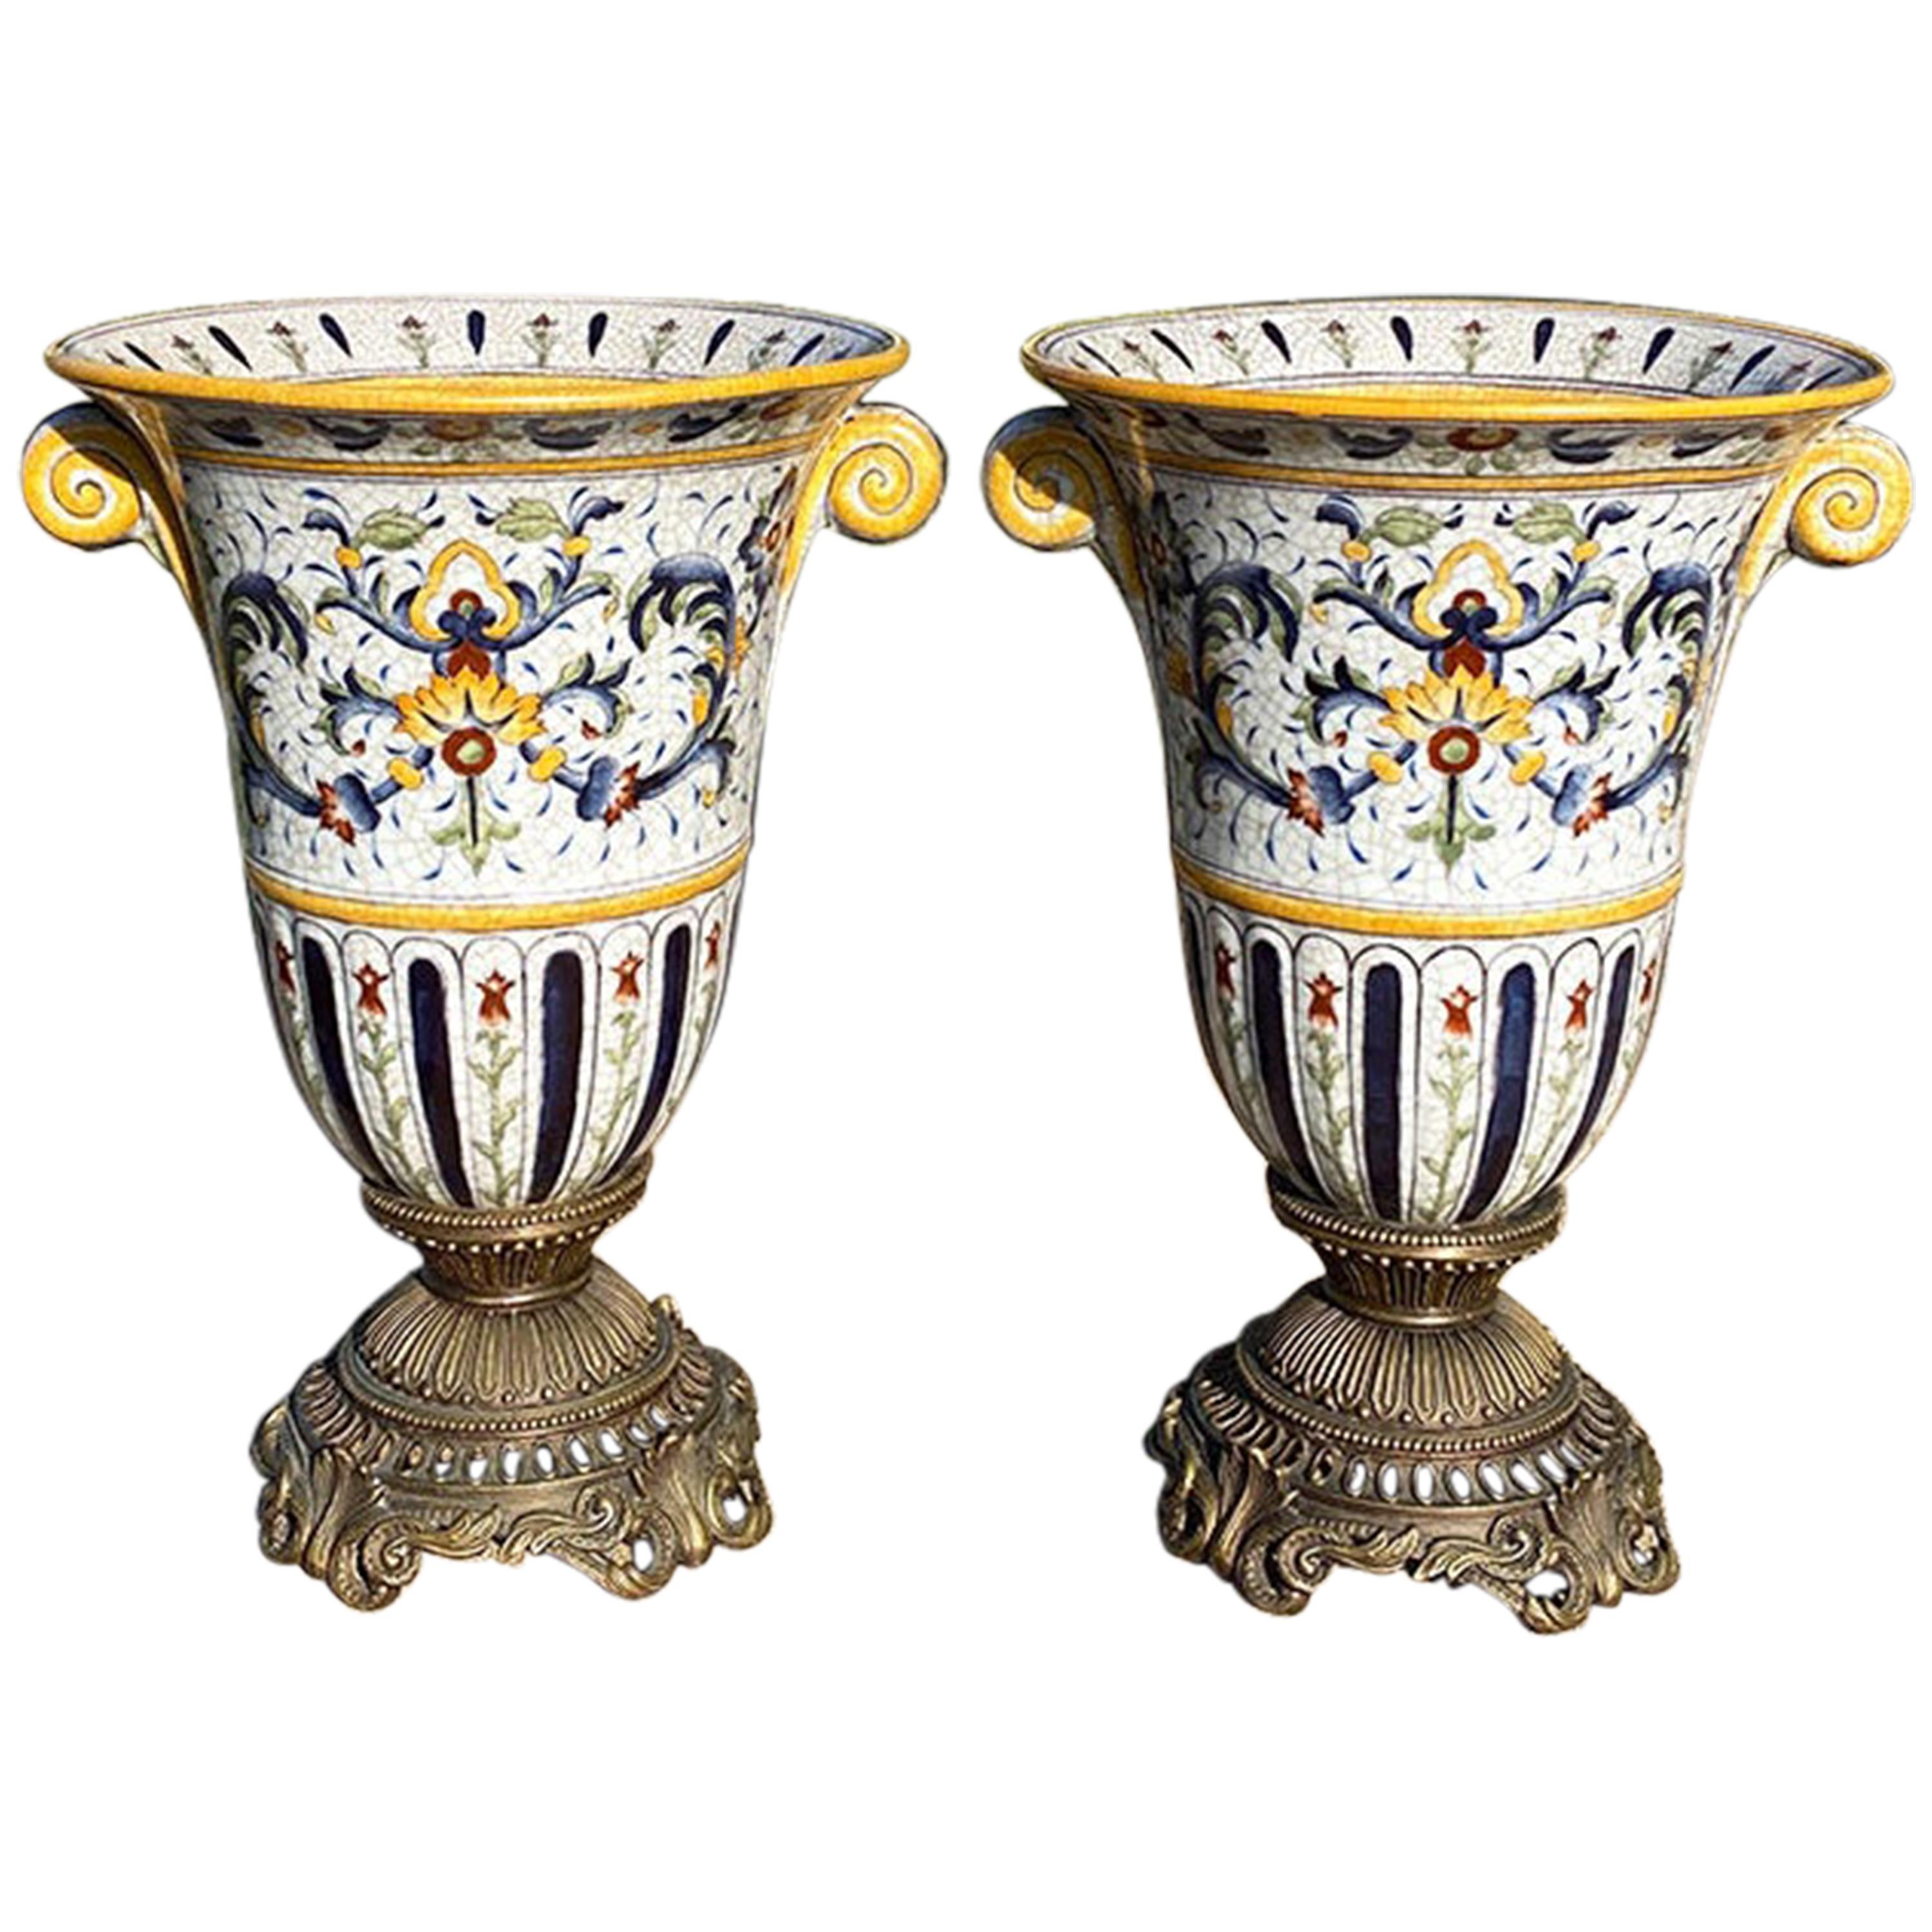 Paire d'urnes monumentales montées sur support en céramique peinte et craquelée, signées